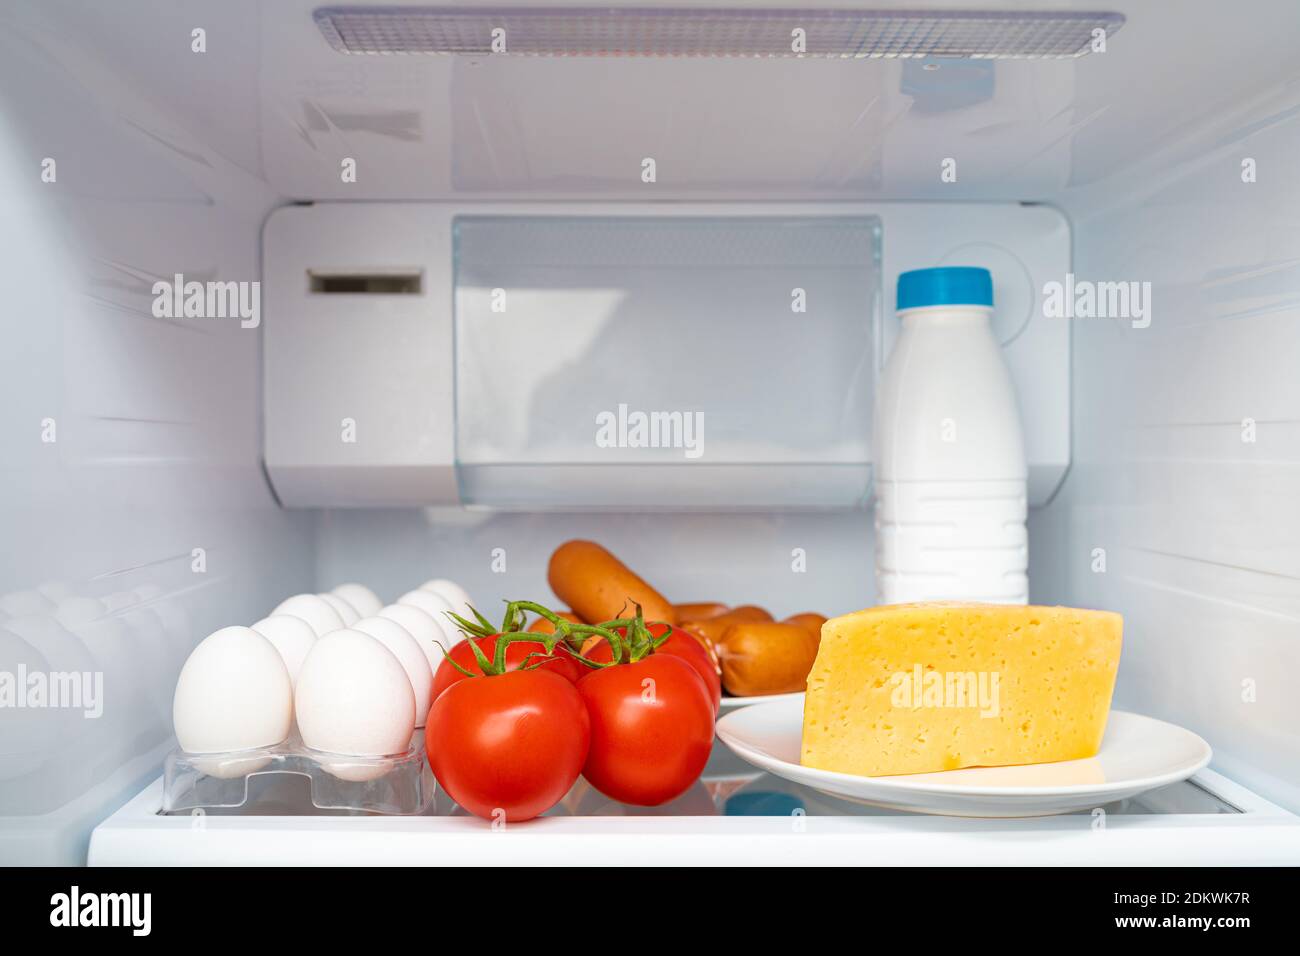 Kühlschrank Regal mit Lebensmitteln und Flasche Milch Stockfotografie -  Alamy